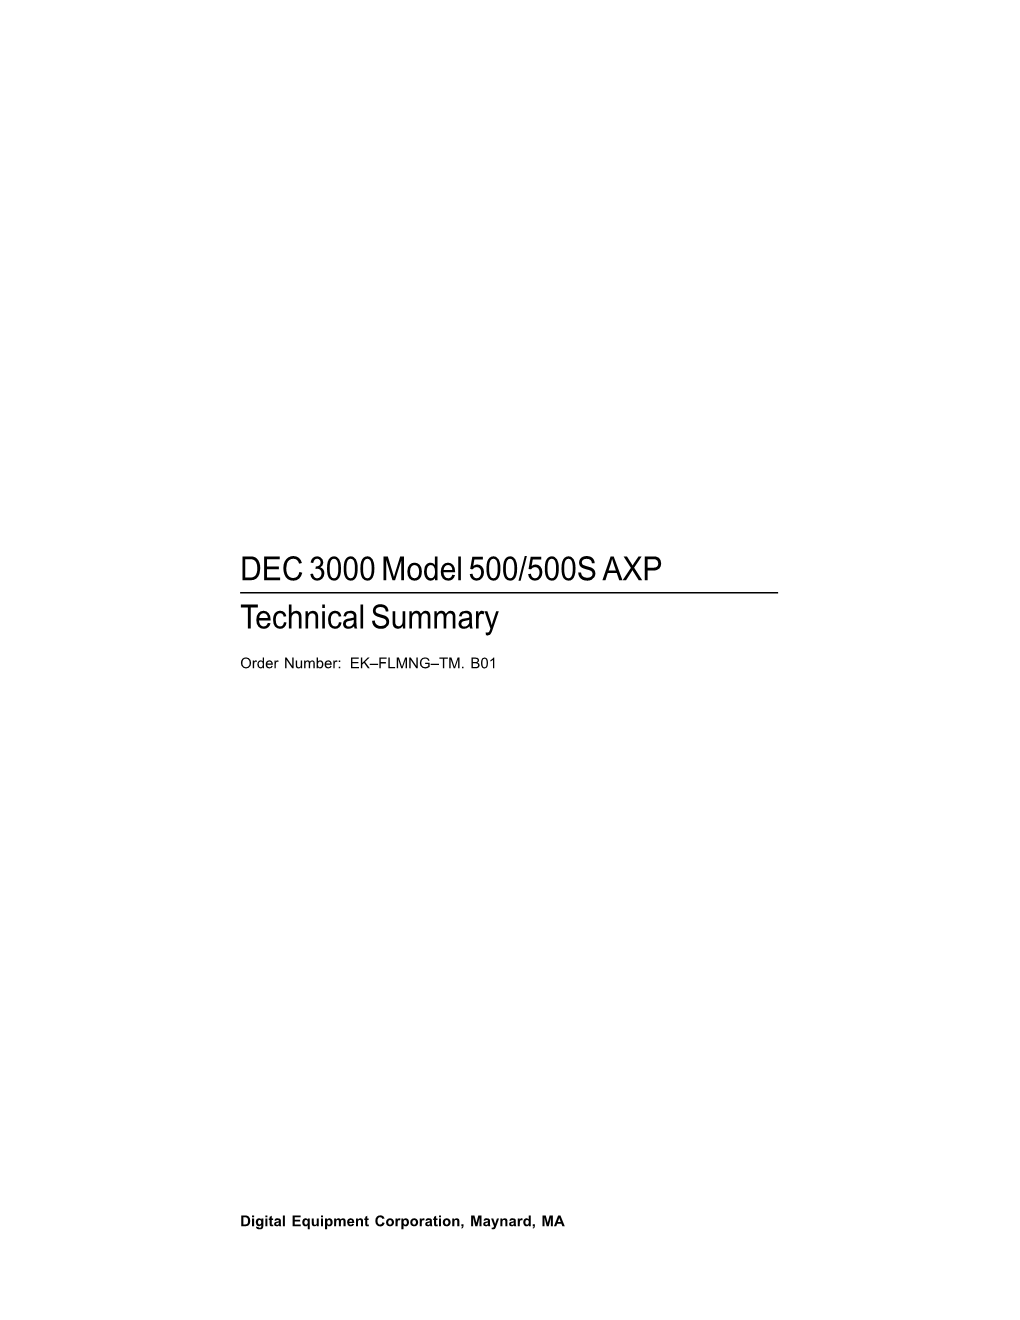 DEC 3000 Model 500/500S AXP Technical Summary